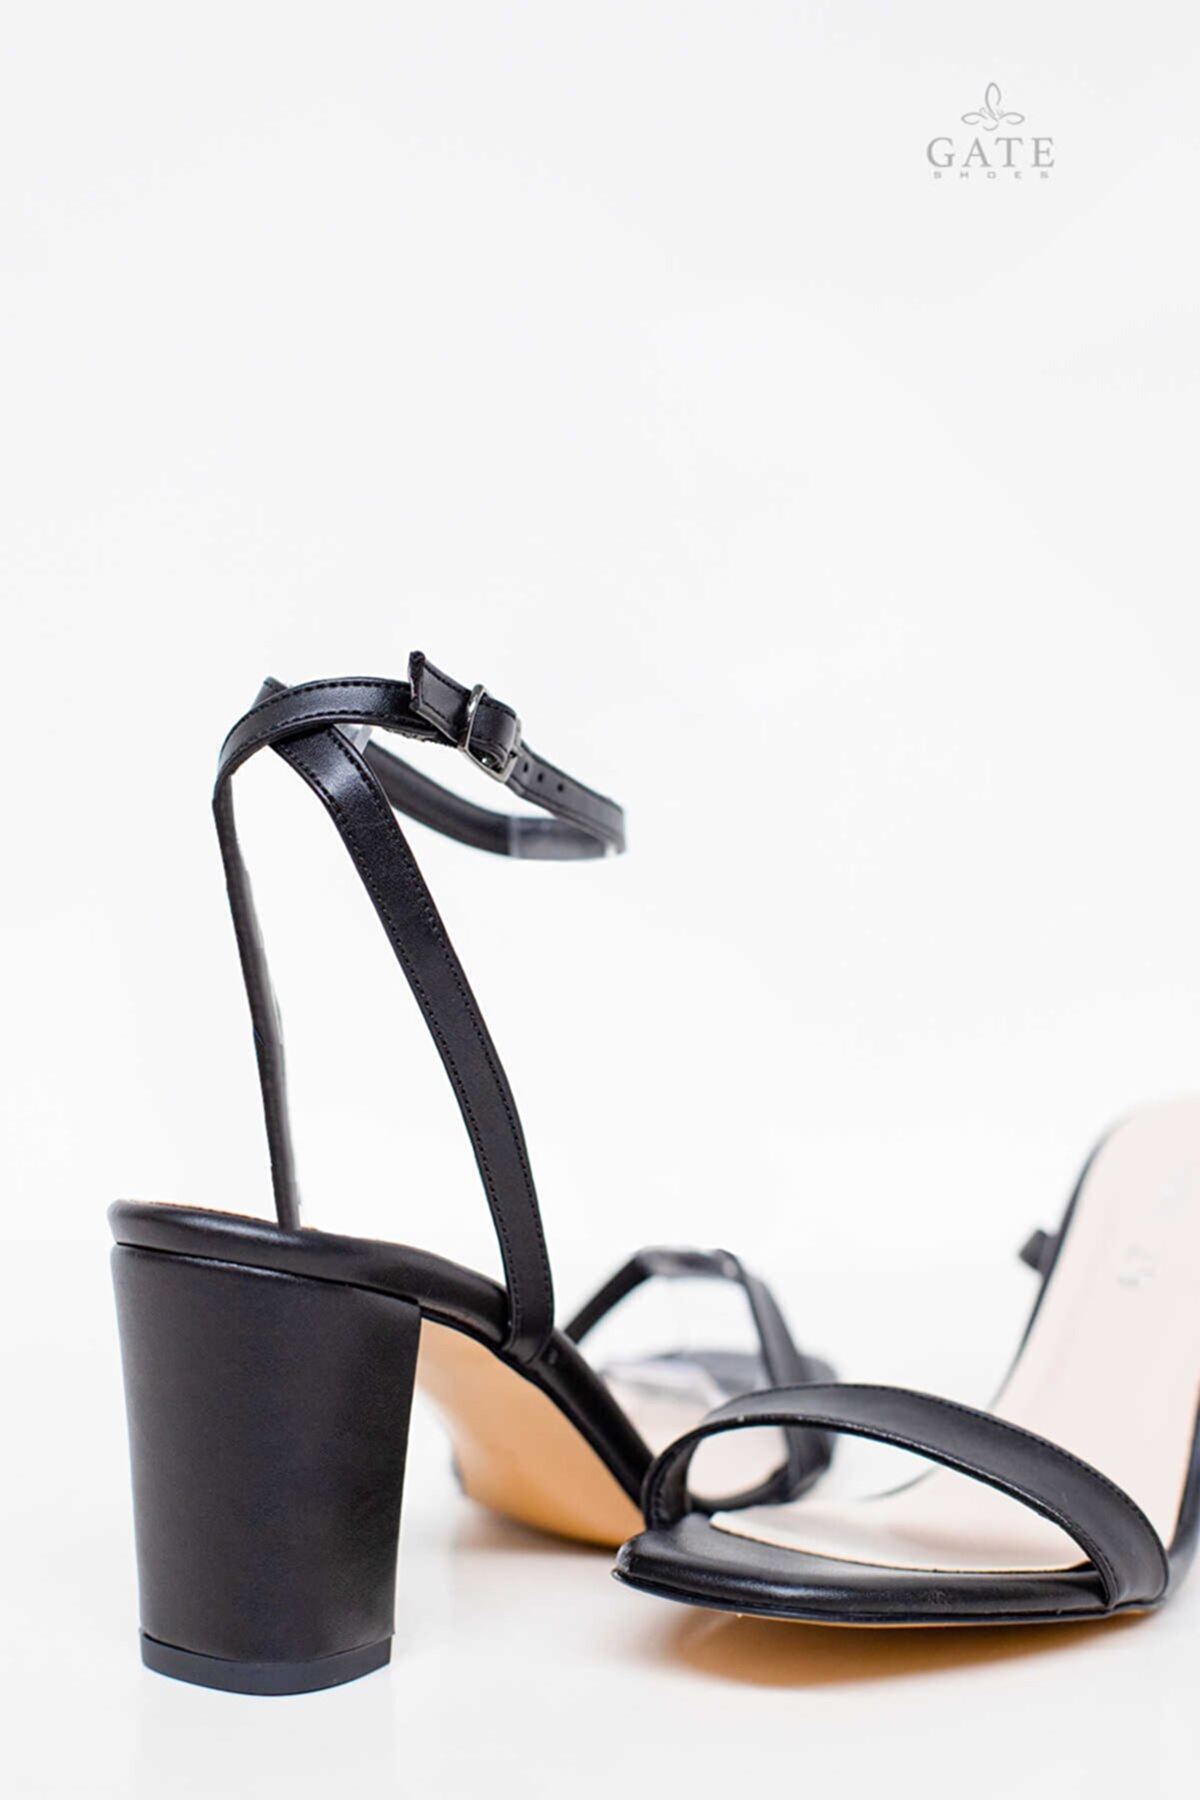 Kadın Tek Bantlı Topuklu Ayakkabı Sandalet Lara Gate Shoes-Siyah